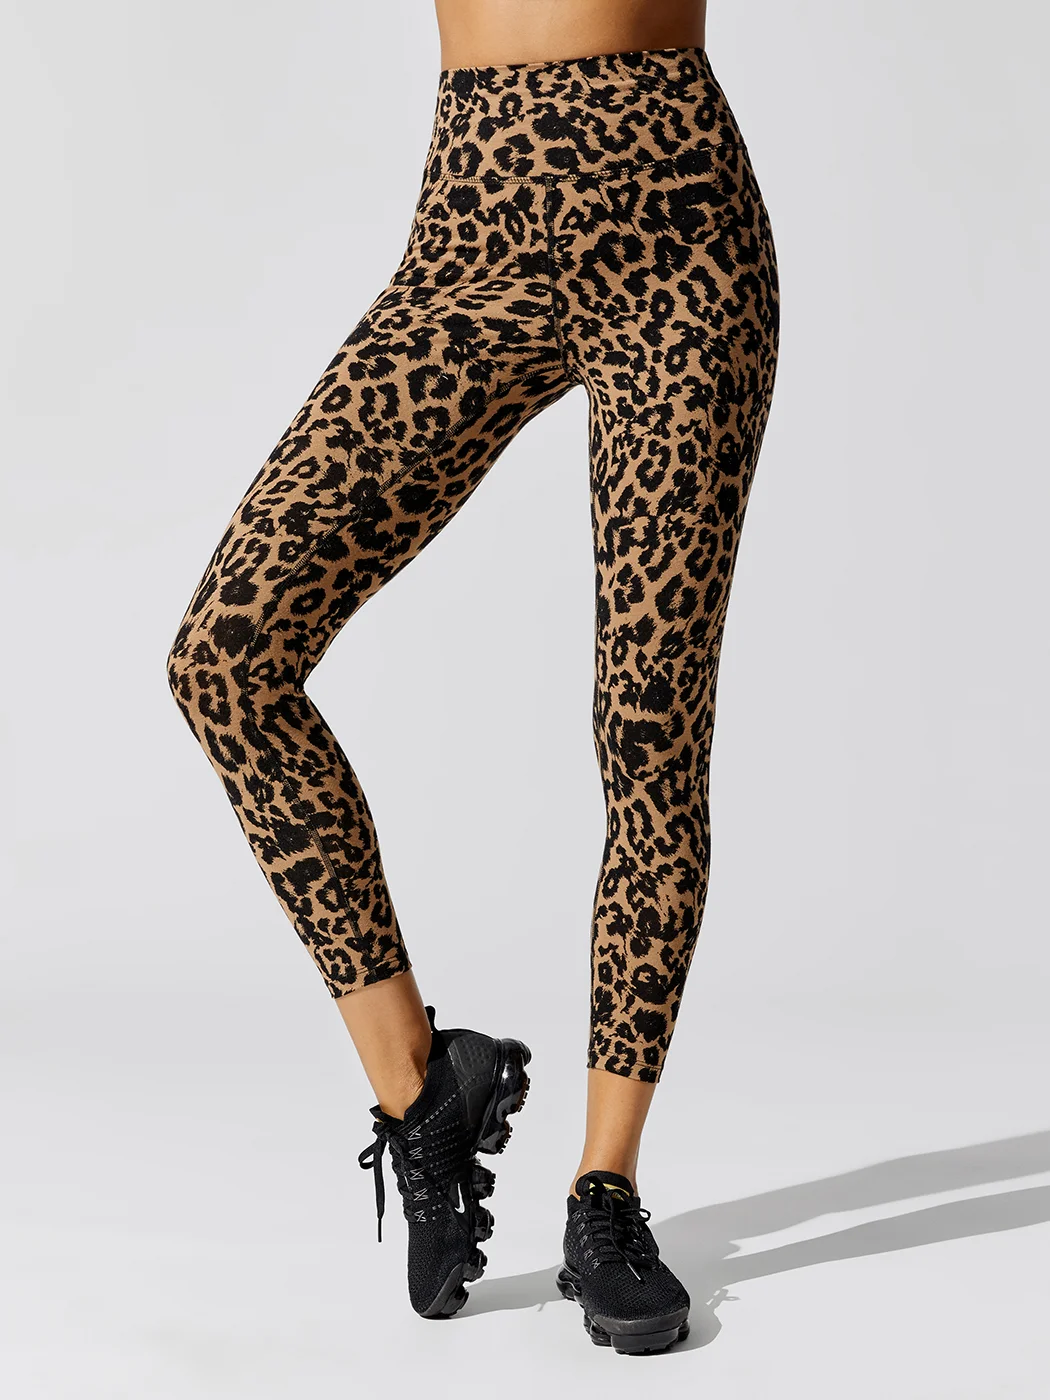 Carbon38 + Leopard Legging